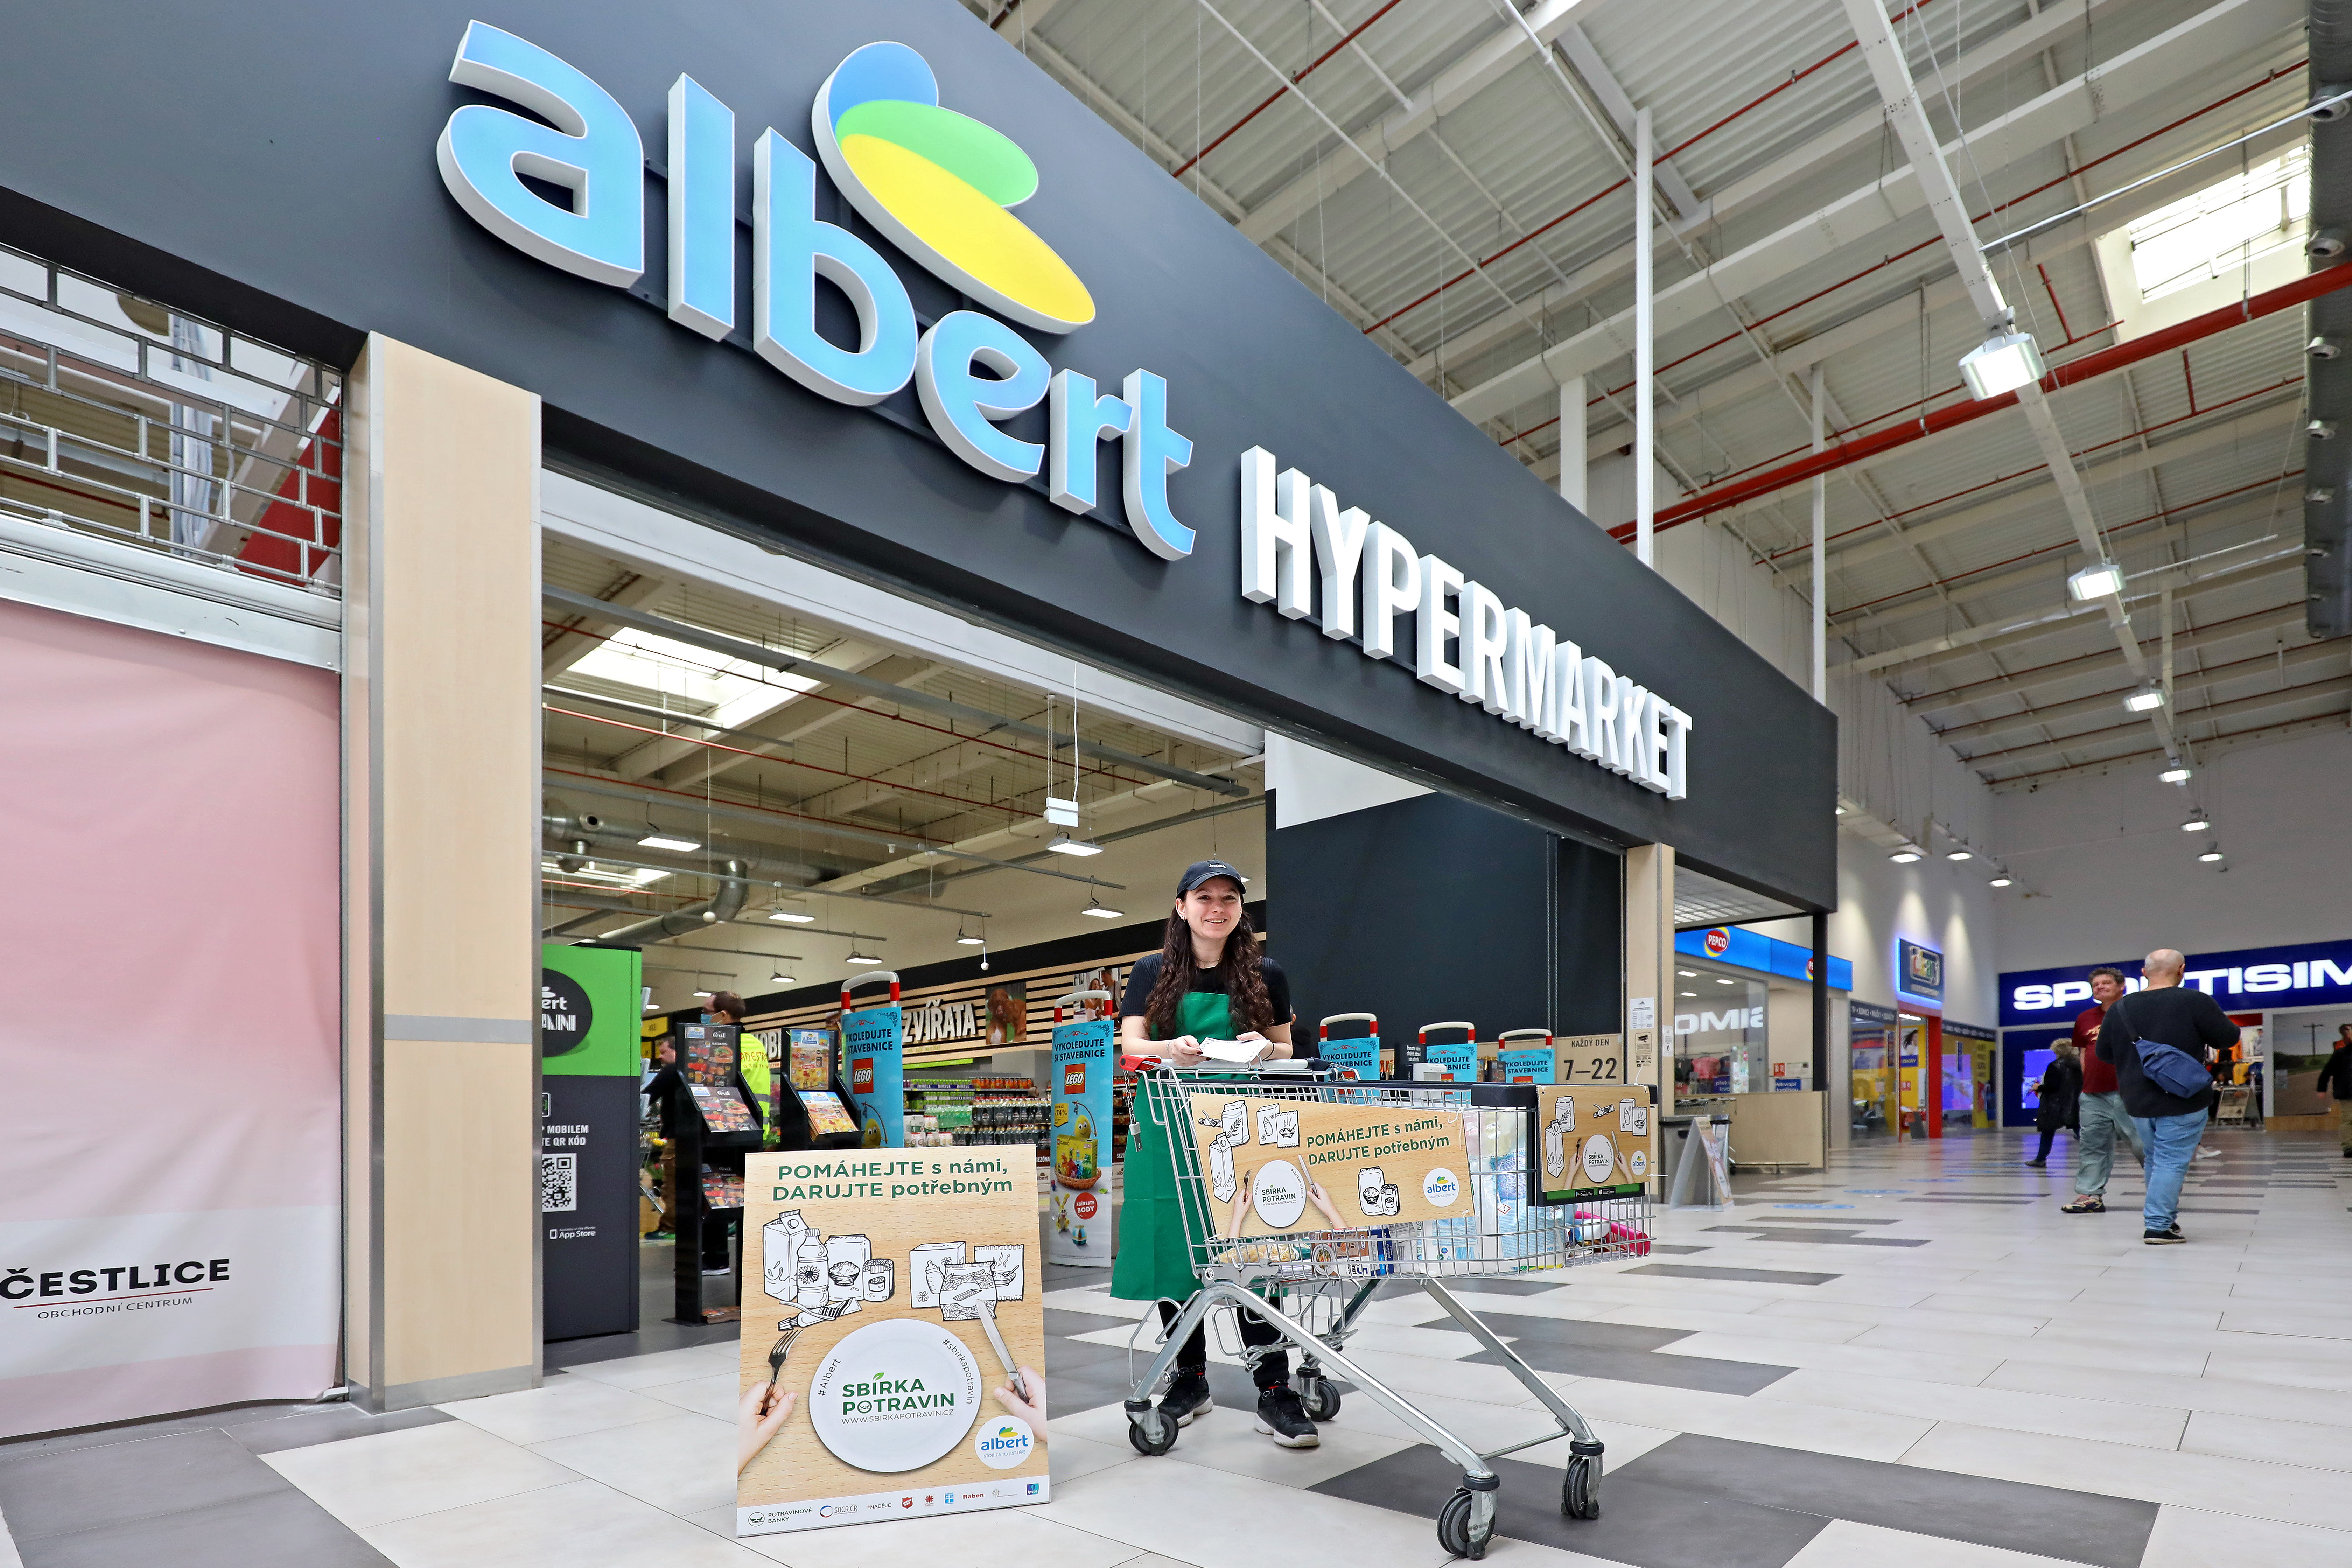 Albert děkuje zákazníkům. Ve Sbírce potravin darovali v jeho obchodech 45 tun potravin pro potřebné